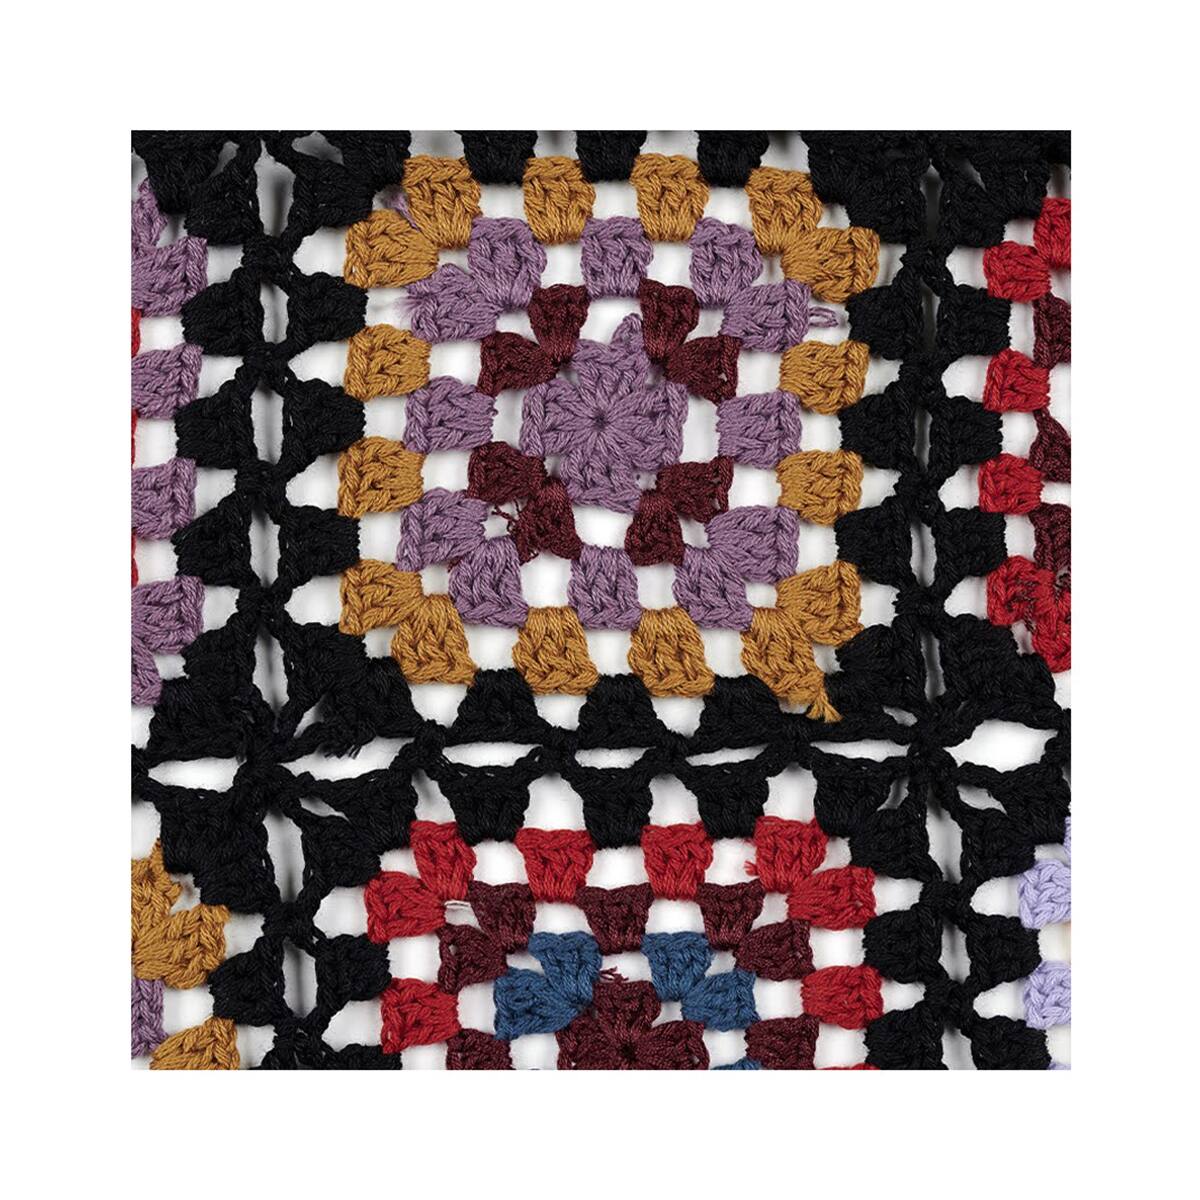 【SCULPTOR】★ Handmade Crochet Bolero Top